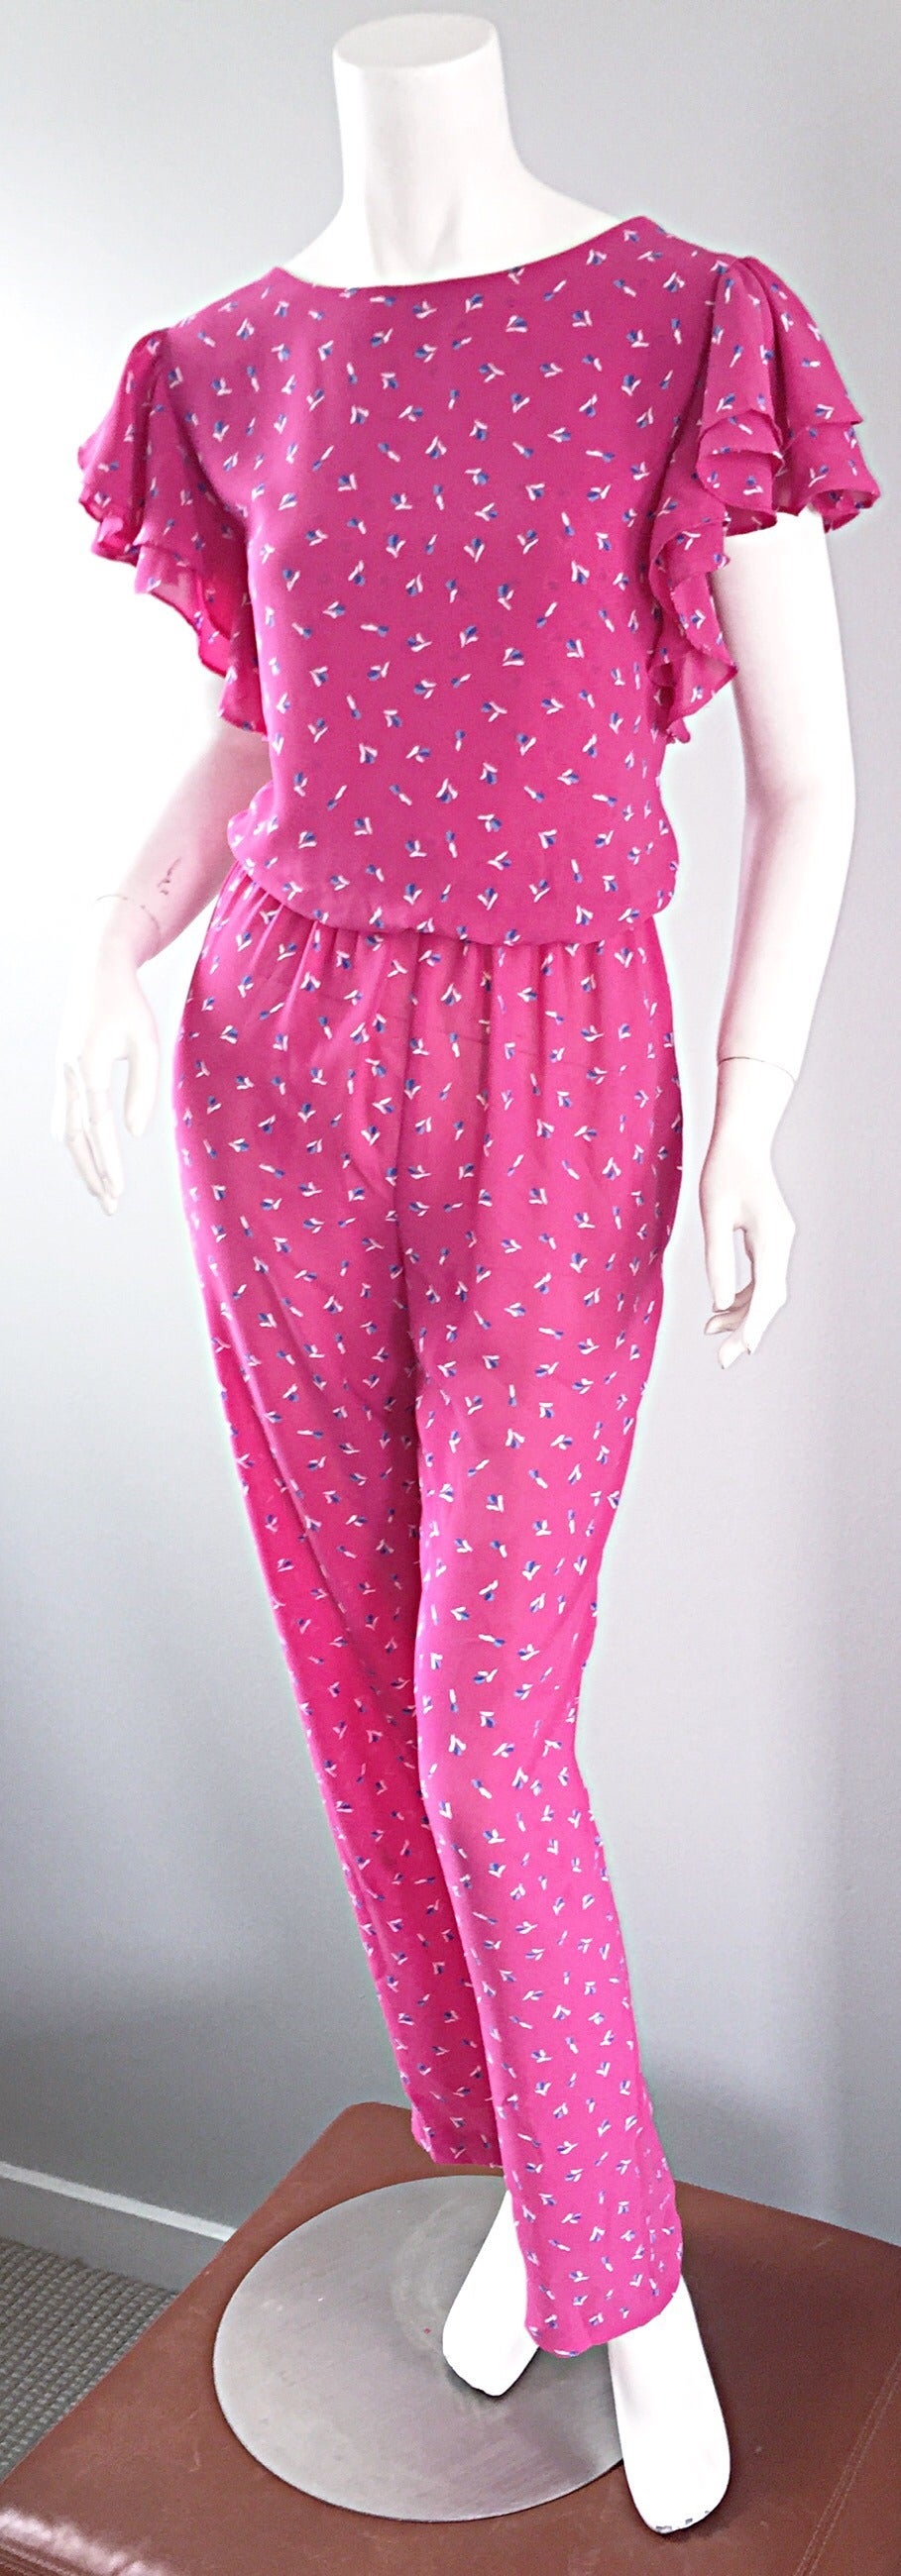 Incredible Vintage Pink Boho Jumpsuit, w/ Ruffles + Flowers / Roses 3